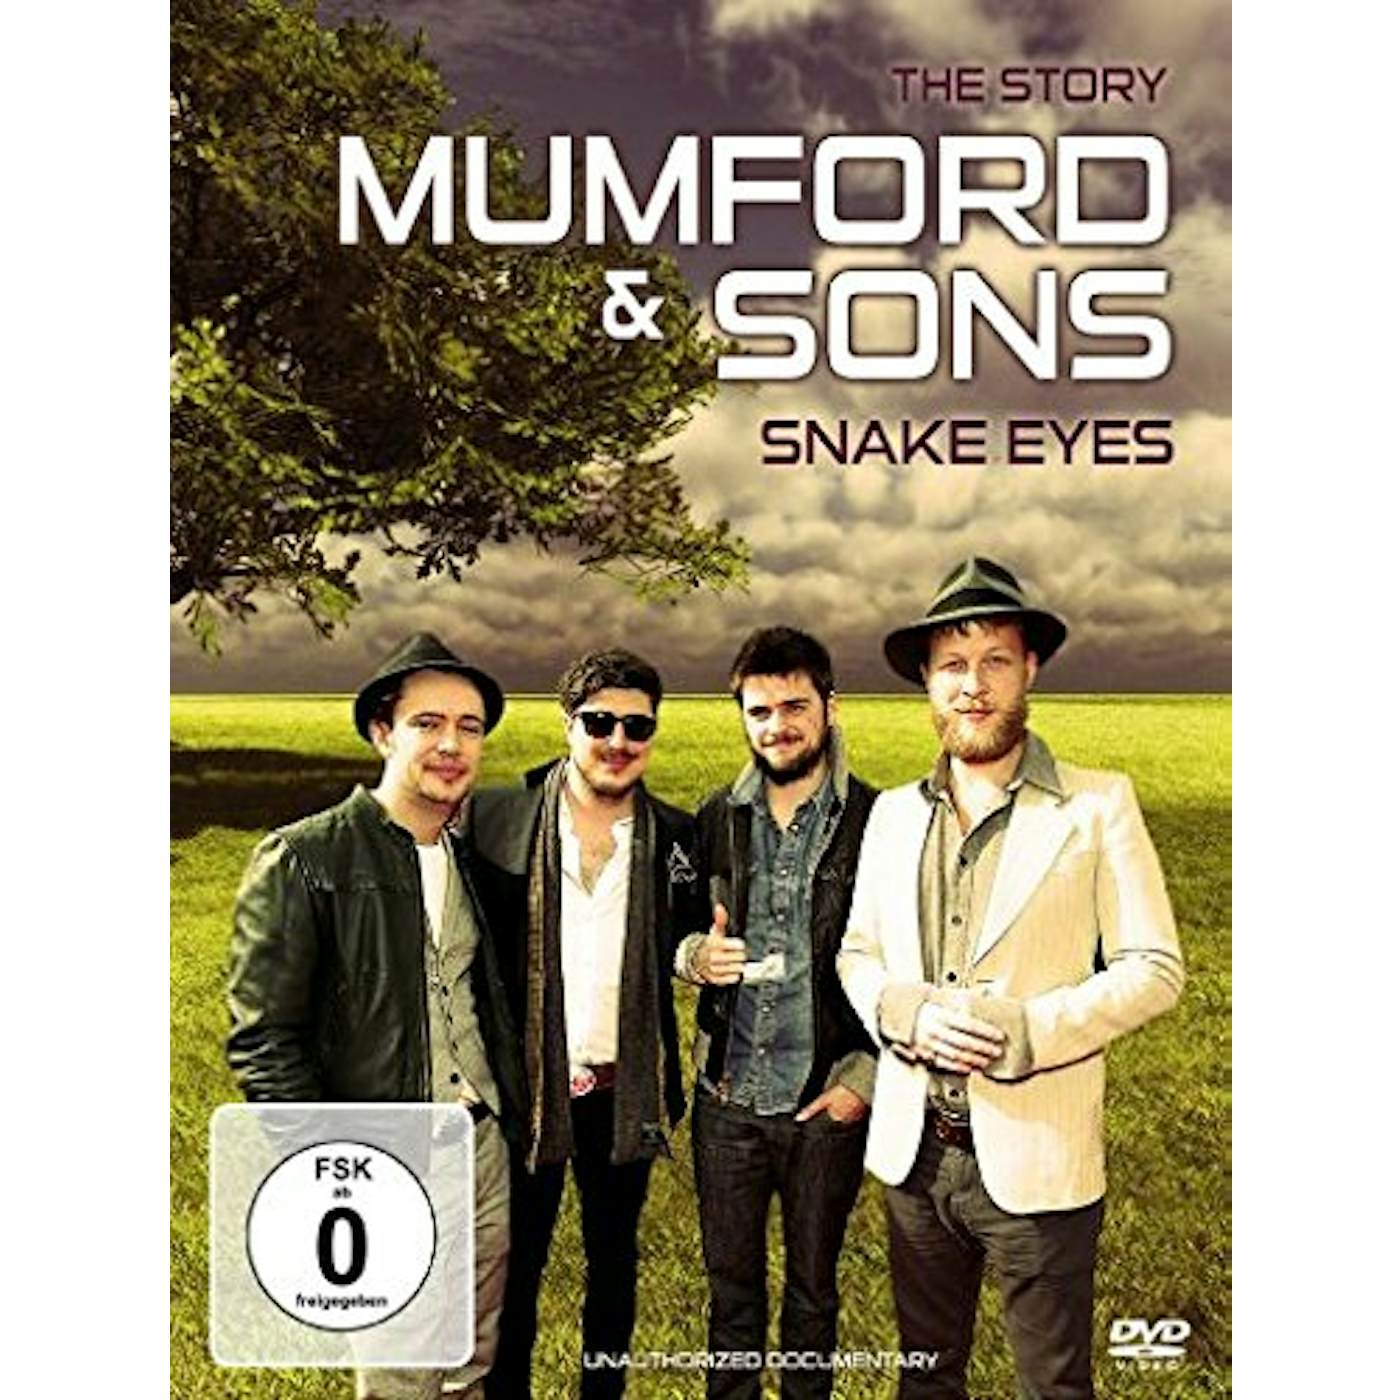 Mumford & Sons SNAKE EYES (DOCUMENTARY) DVD